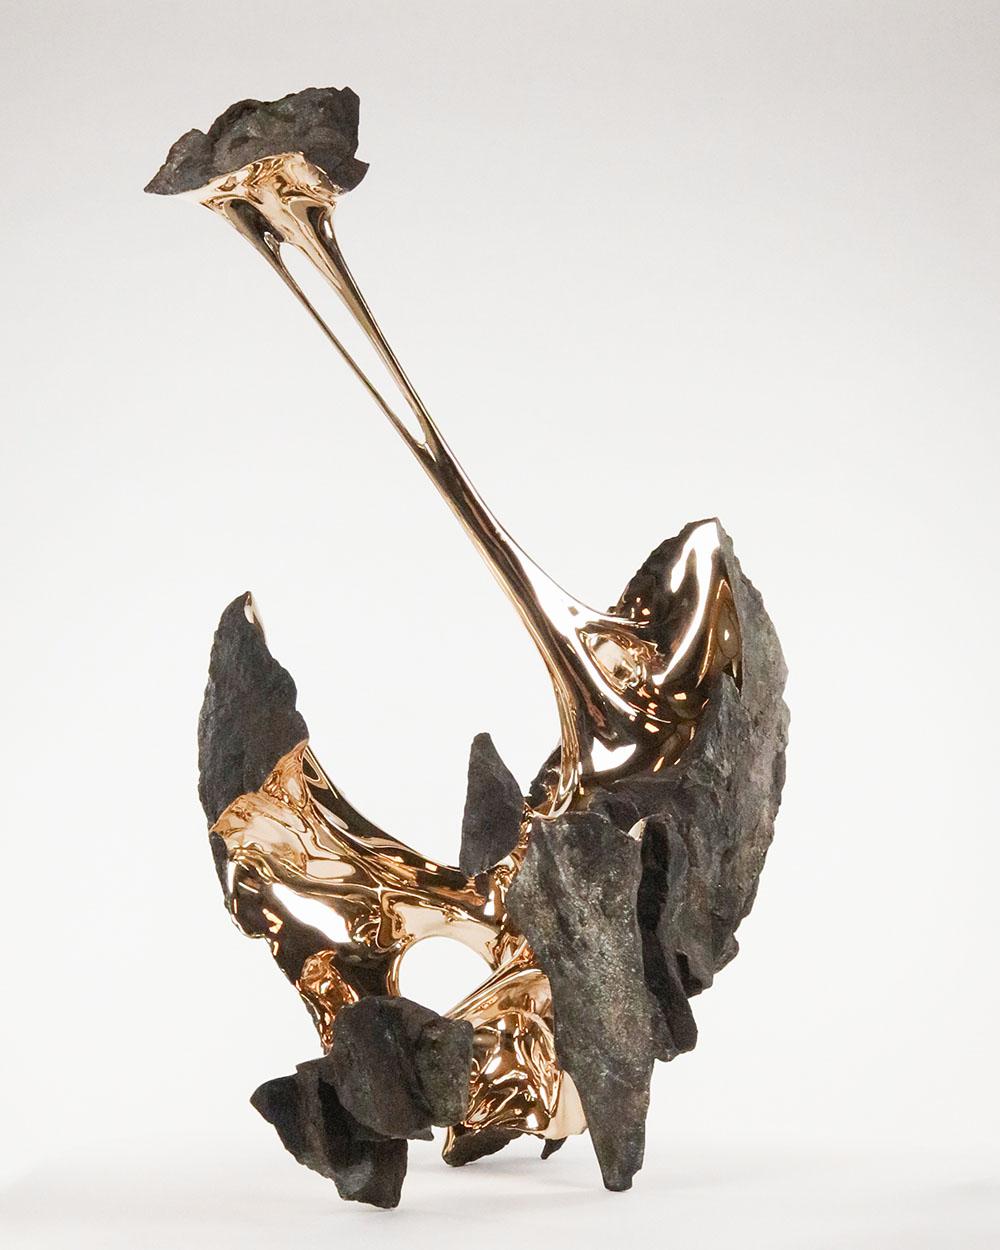 Serendipity est une sculpture abstraite de l'artiste contemporain français Romain Langlois.

Sculpture en bronze poli et doré : 102 cm × 64 cm × 88 cm. Edition de 8 + 4 A.P.
Cette sculpture est disponible en version or et en version patinée à la